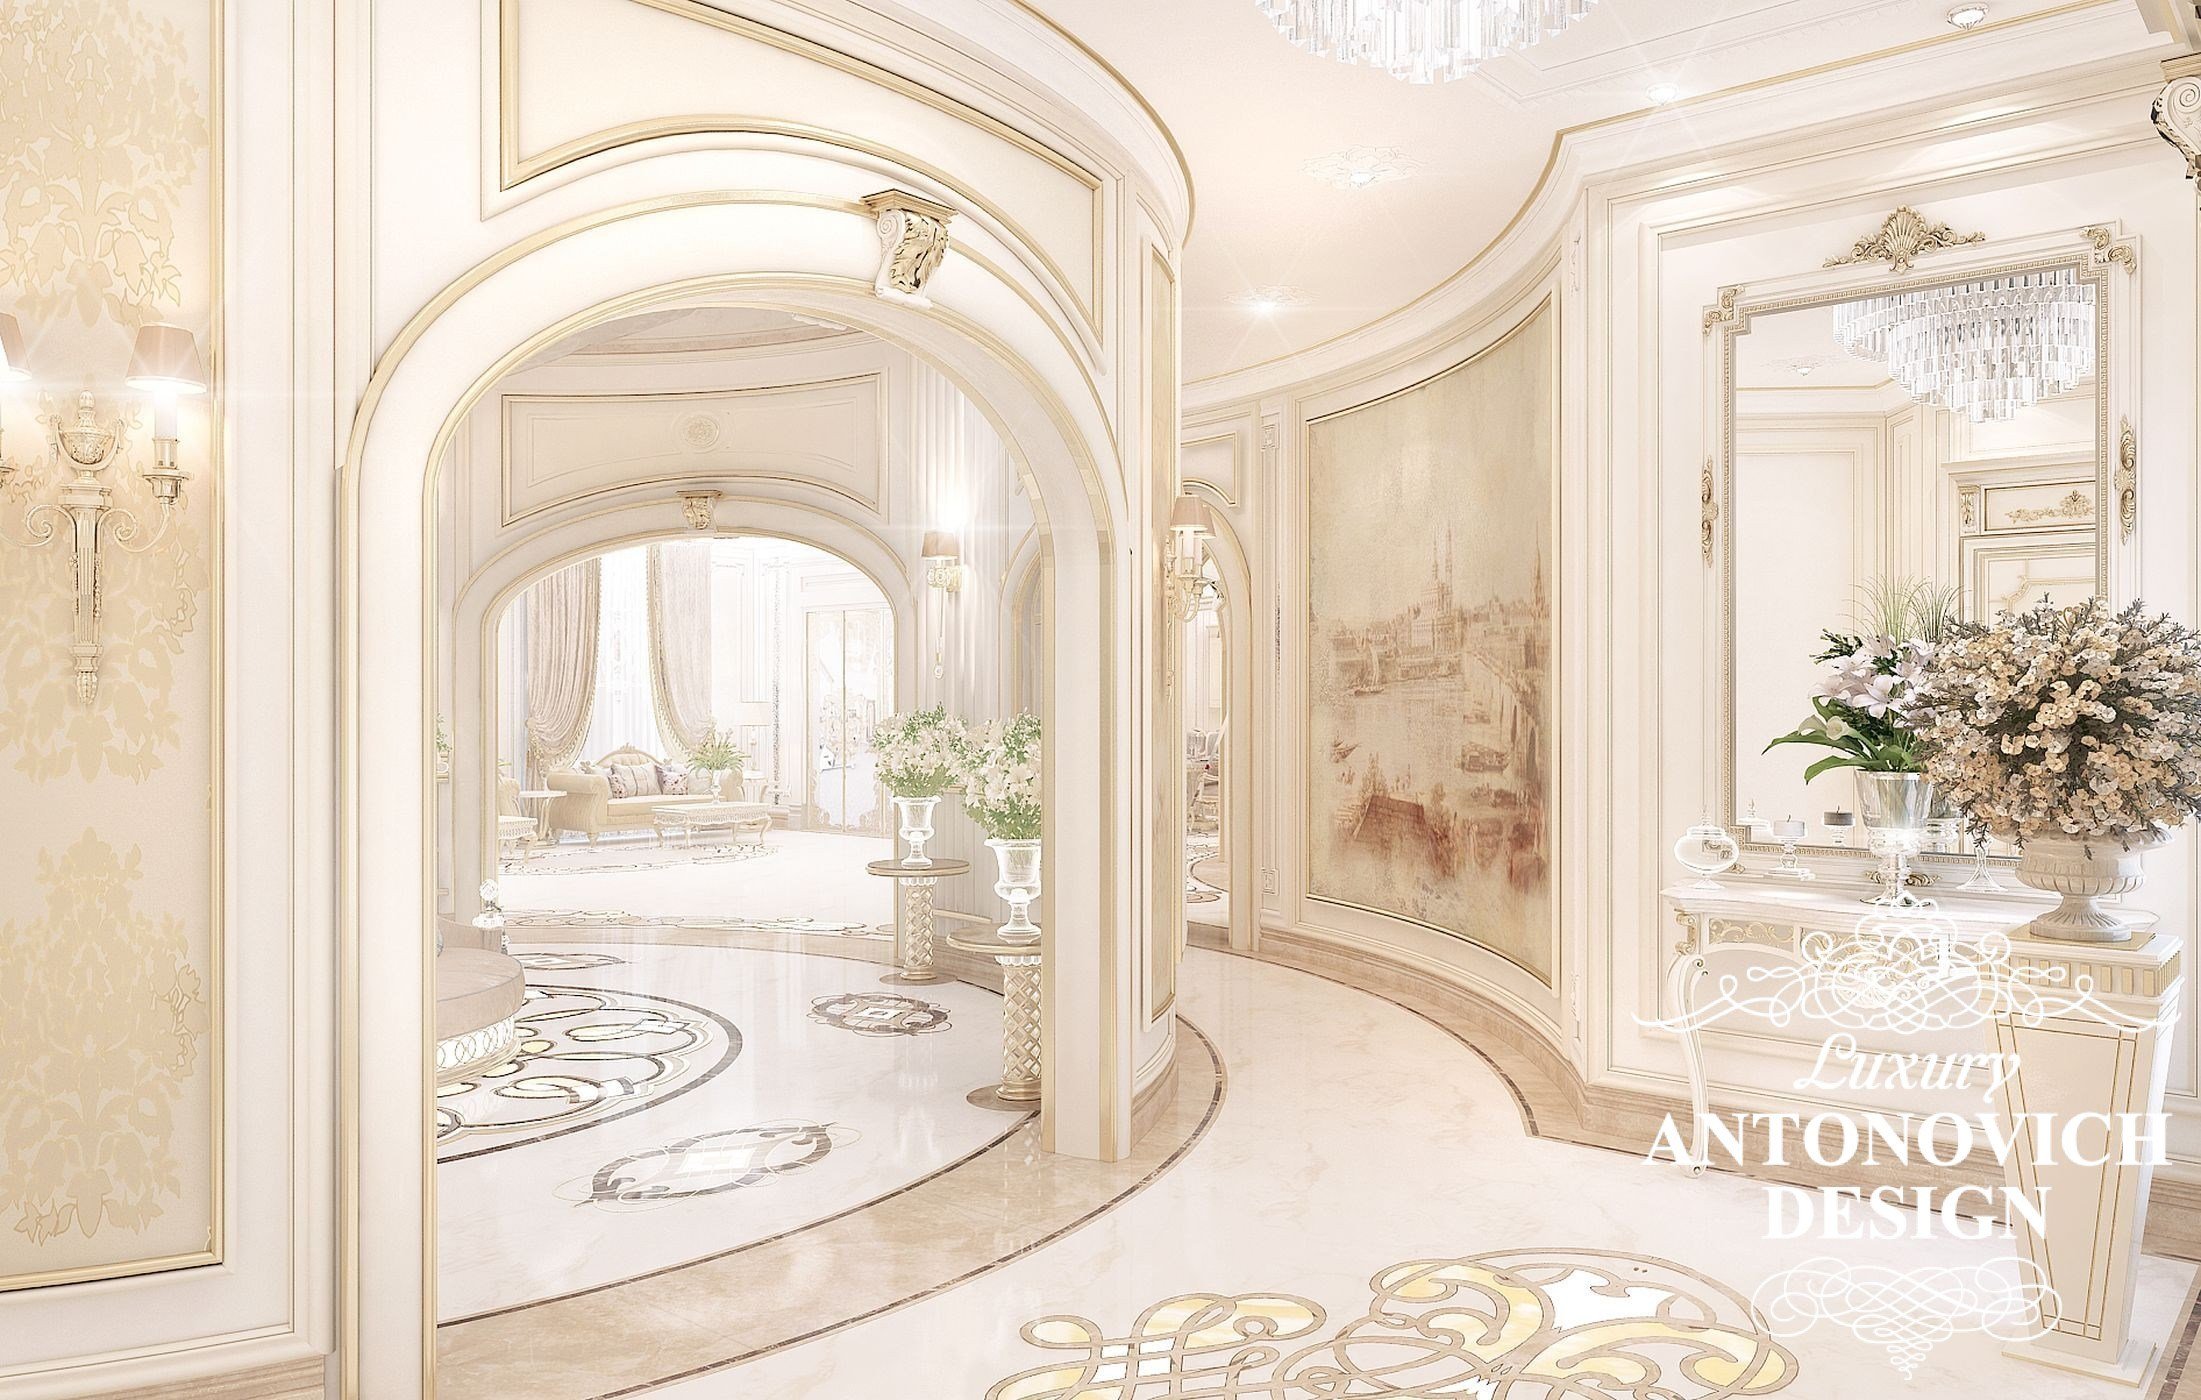 Элитный дизайн интерьера дома с уютной гостиной в классическом стиле от дизайн студии Luxury Antonovich Design